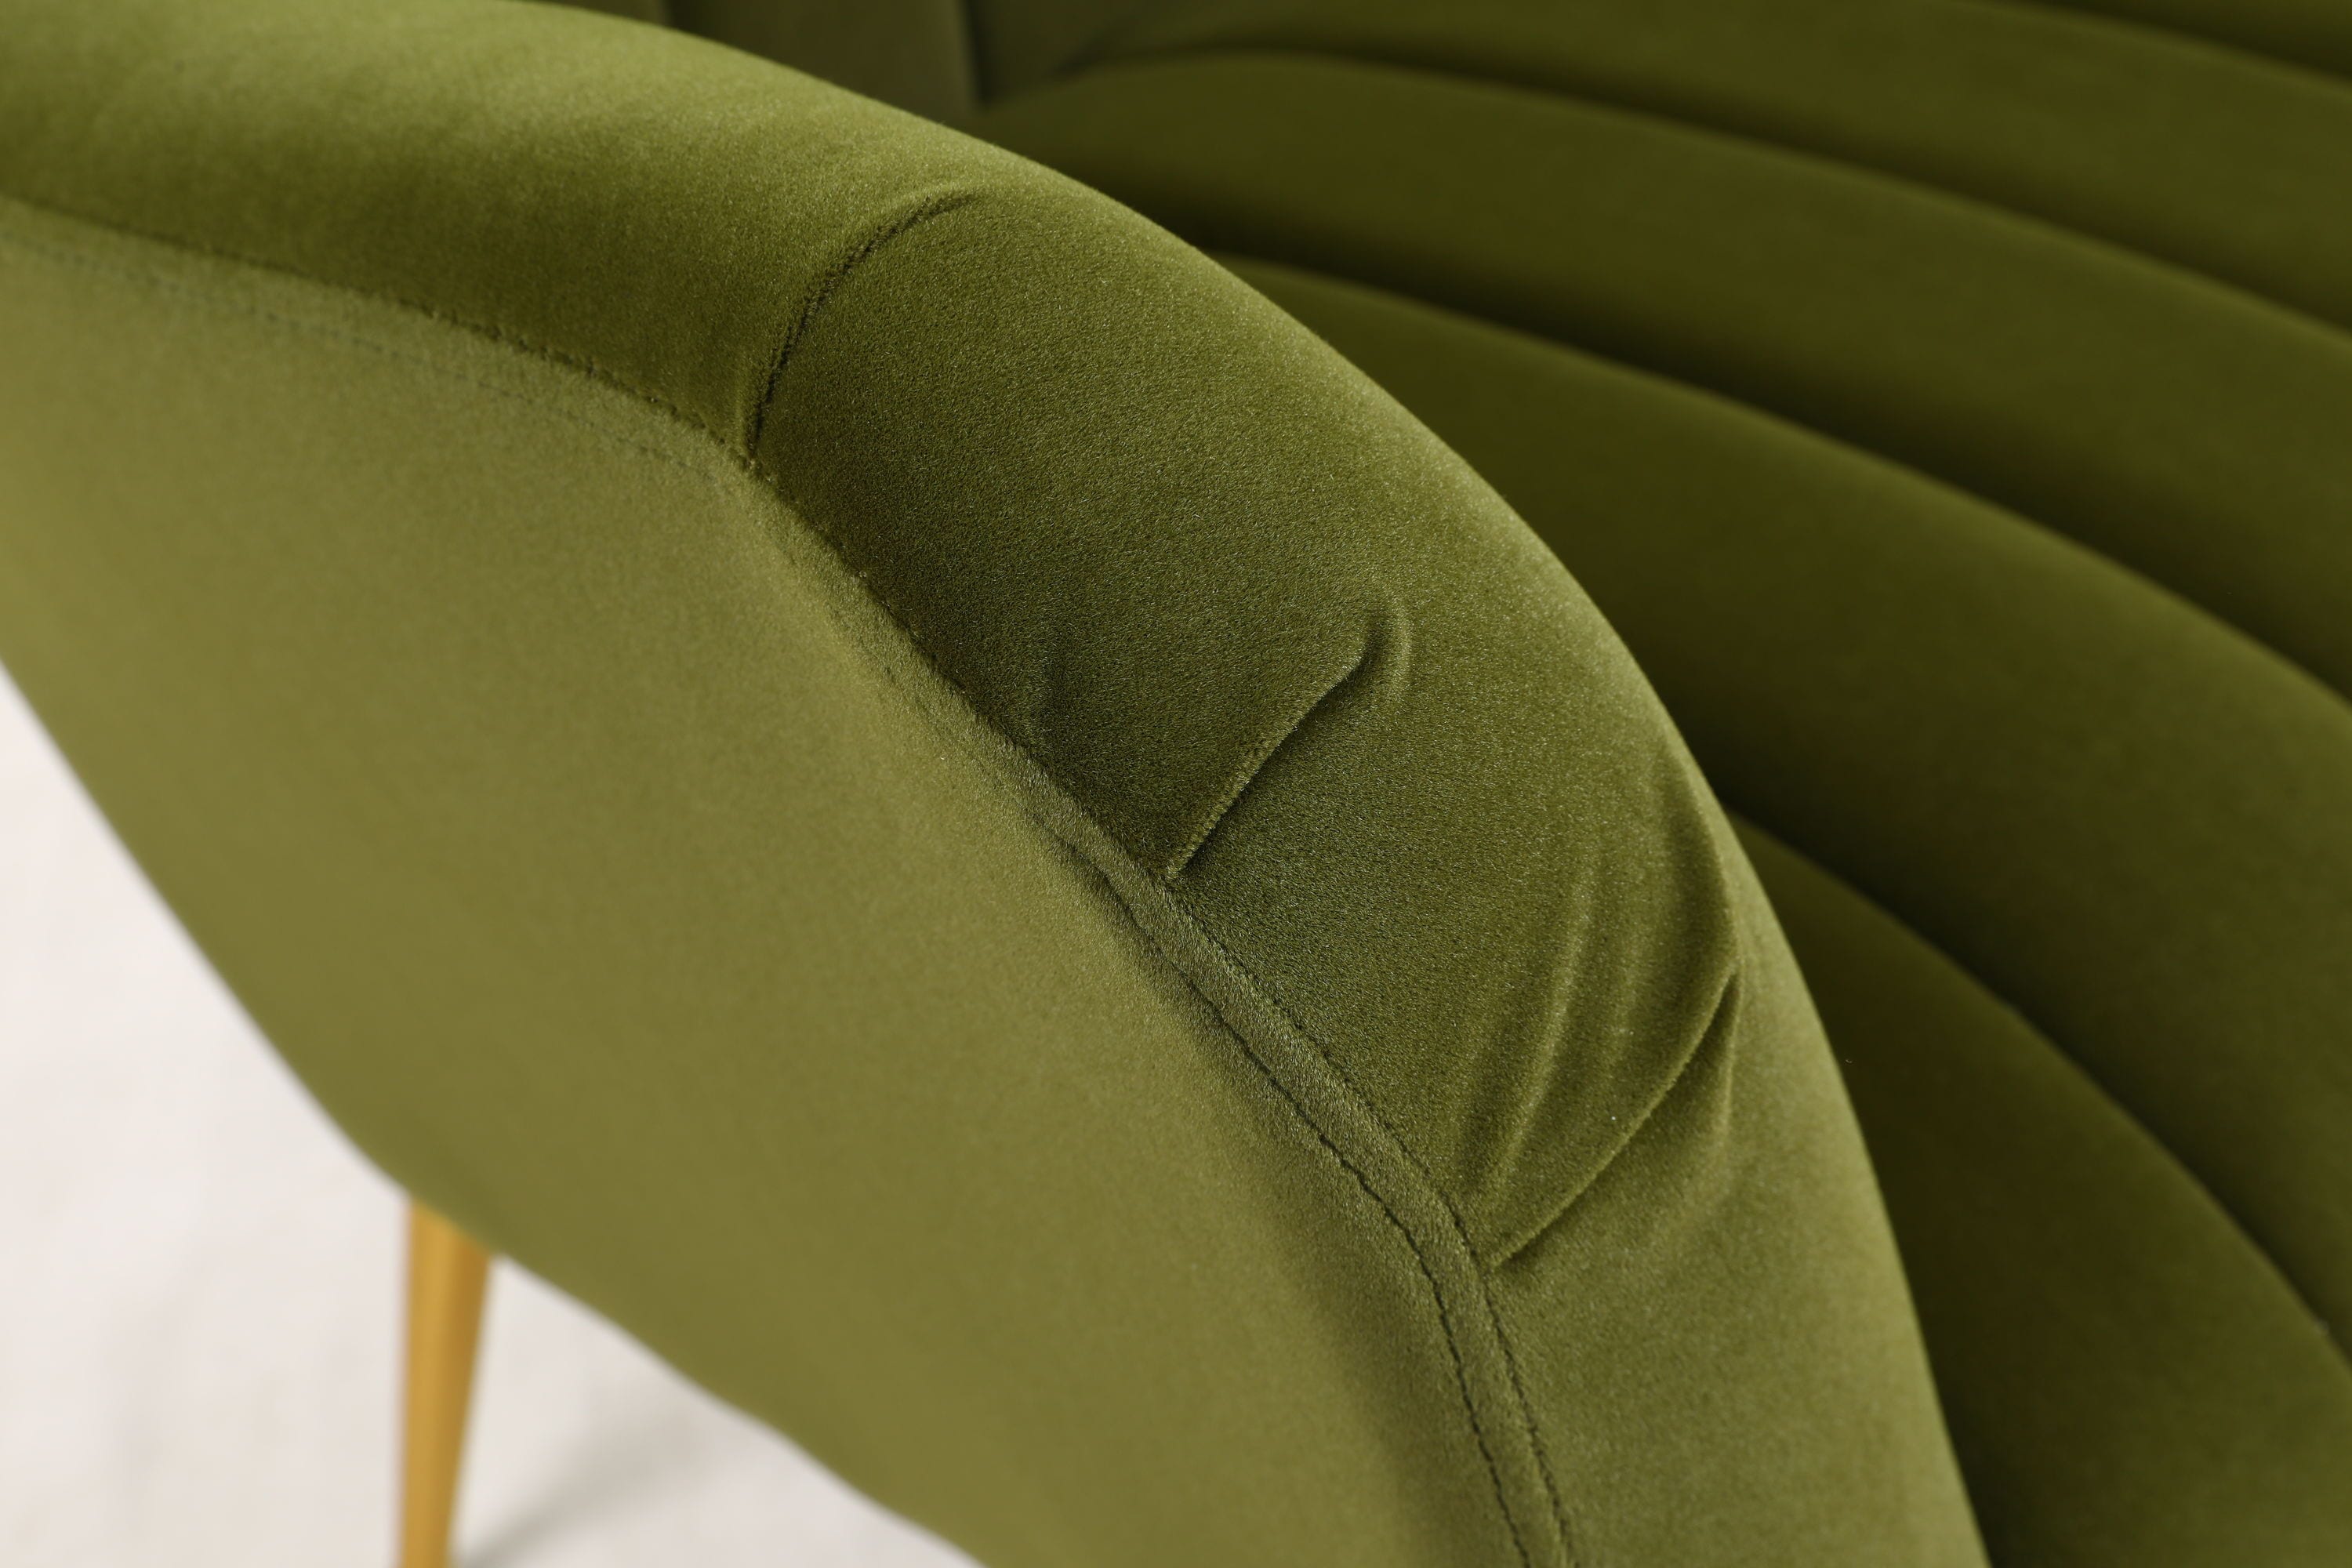 CASAINC Modern velvet chair Contemporary/Modern Velvet Upholstered ...